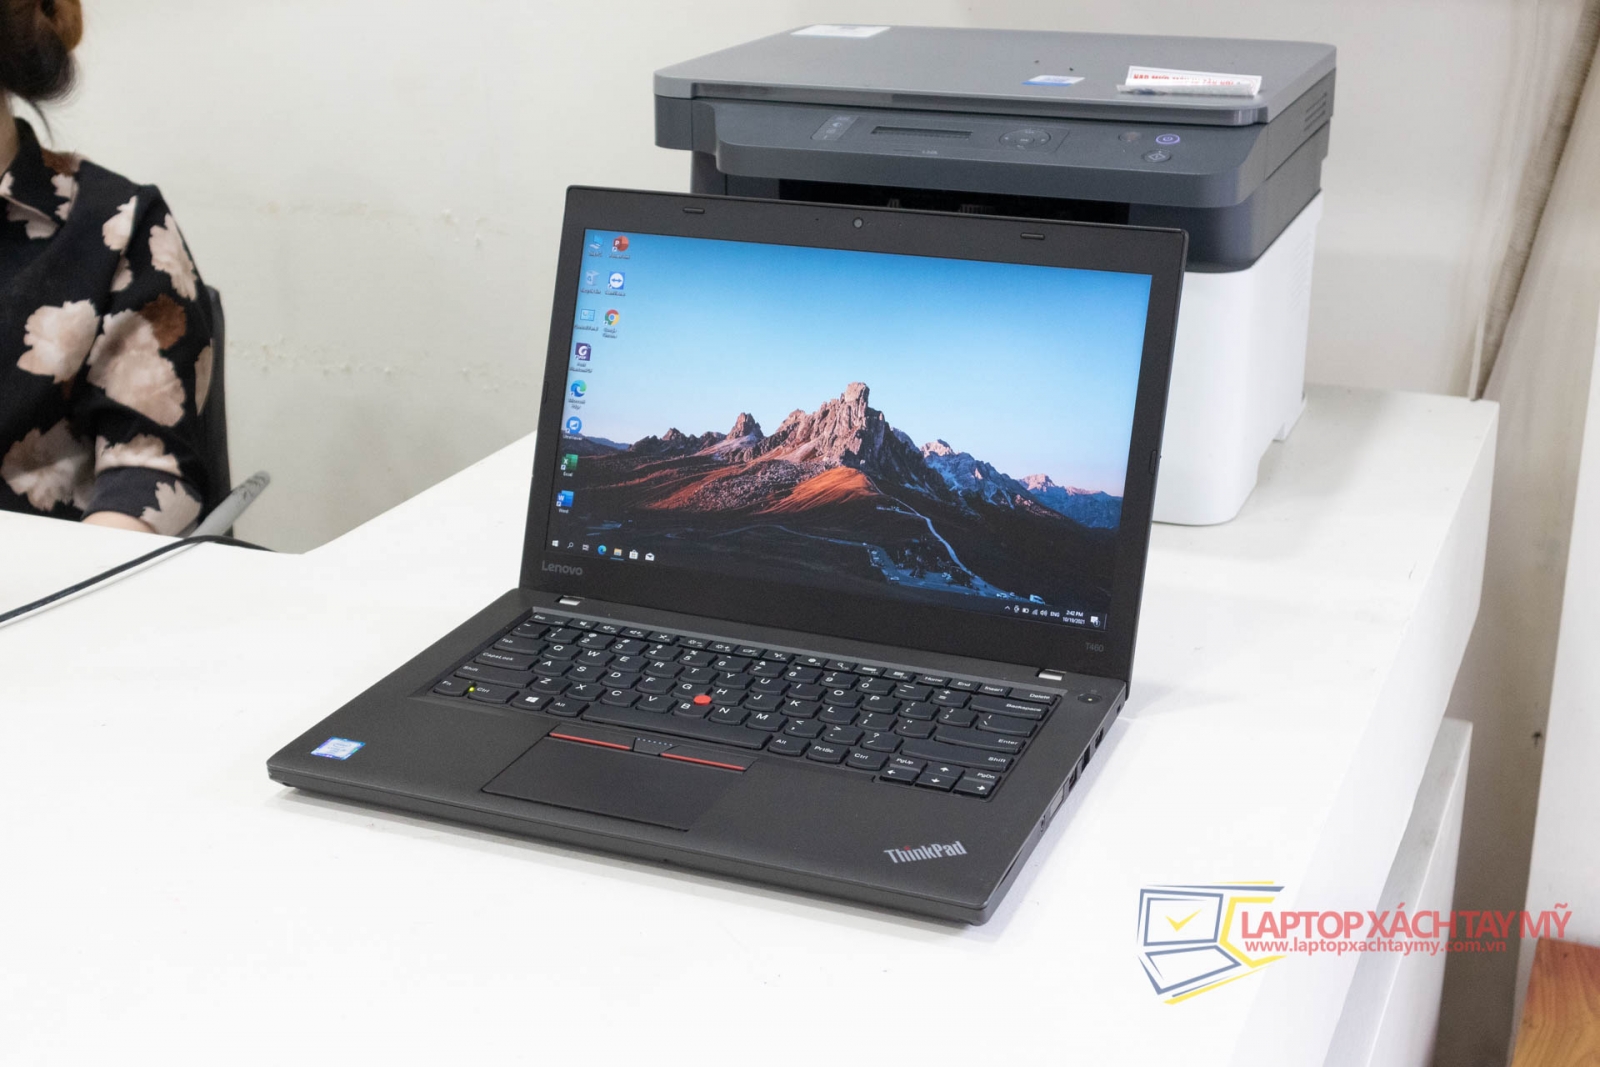 Laptop cũ tp HCM giá rẻ laptop Lenovo Thinkpad T460 Core I5-6300U, Ram 8GB, SSD 256, 14.0 In